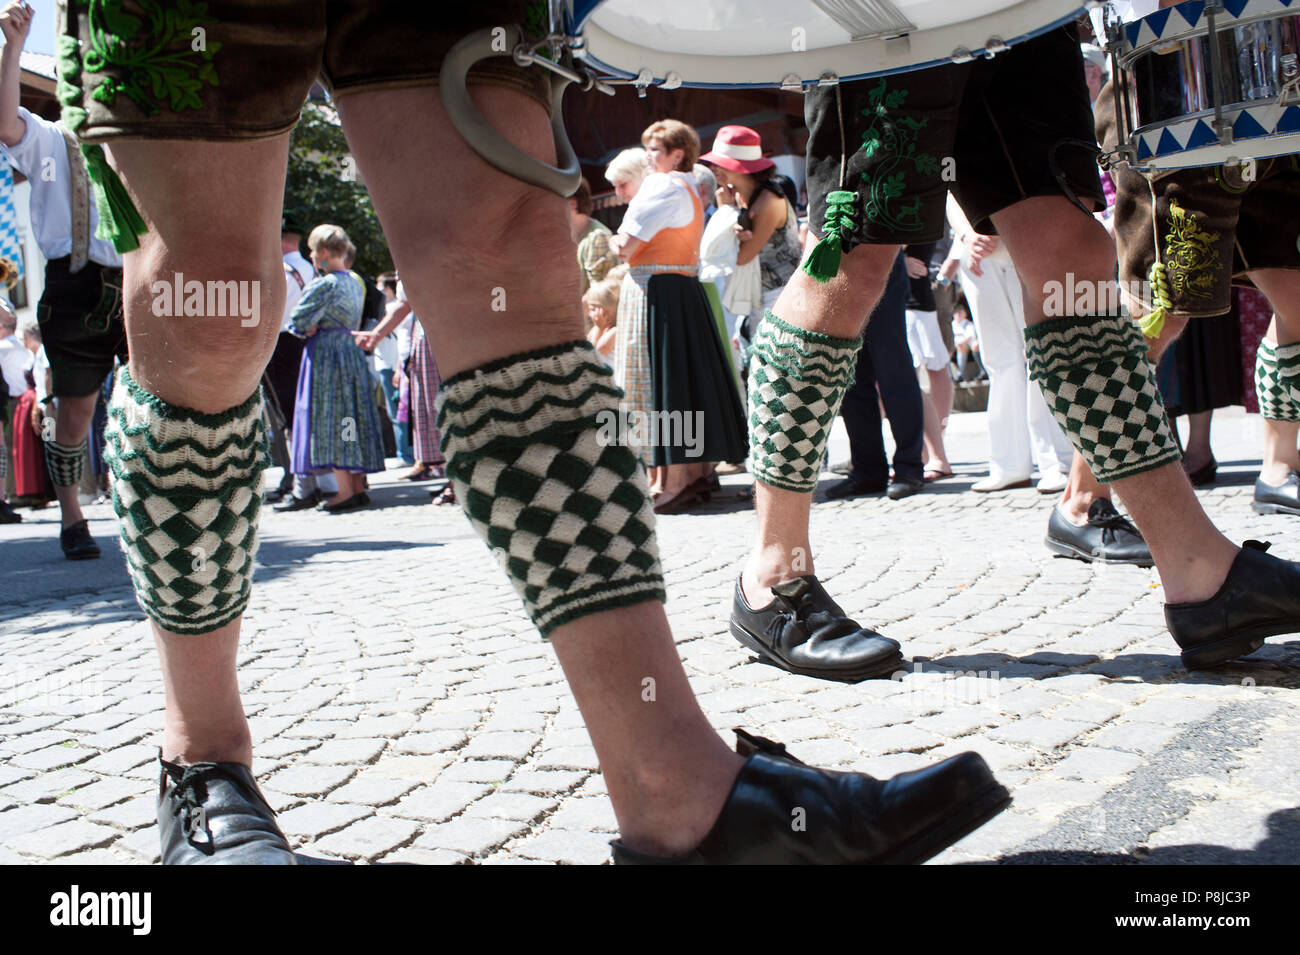 Processione della bavarese di una banda di ottoni nella città di Garmisch-Partenkirchen. Foto Stock